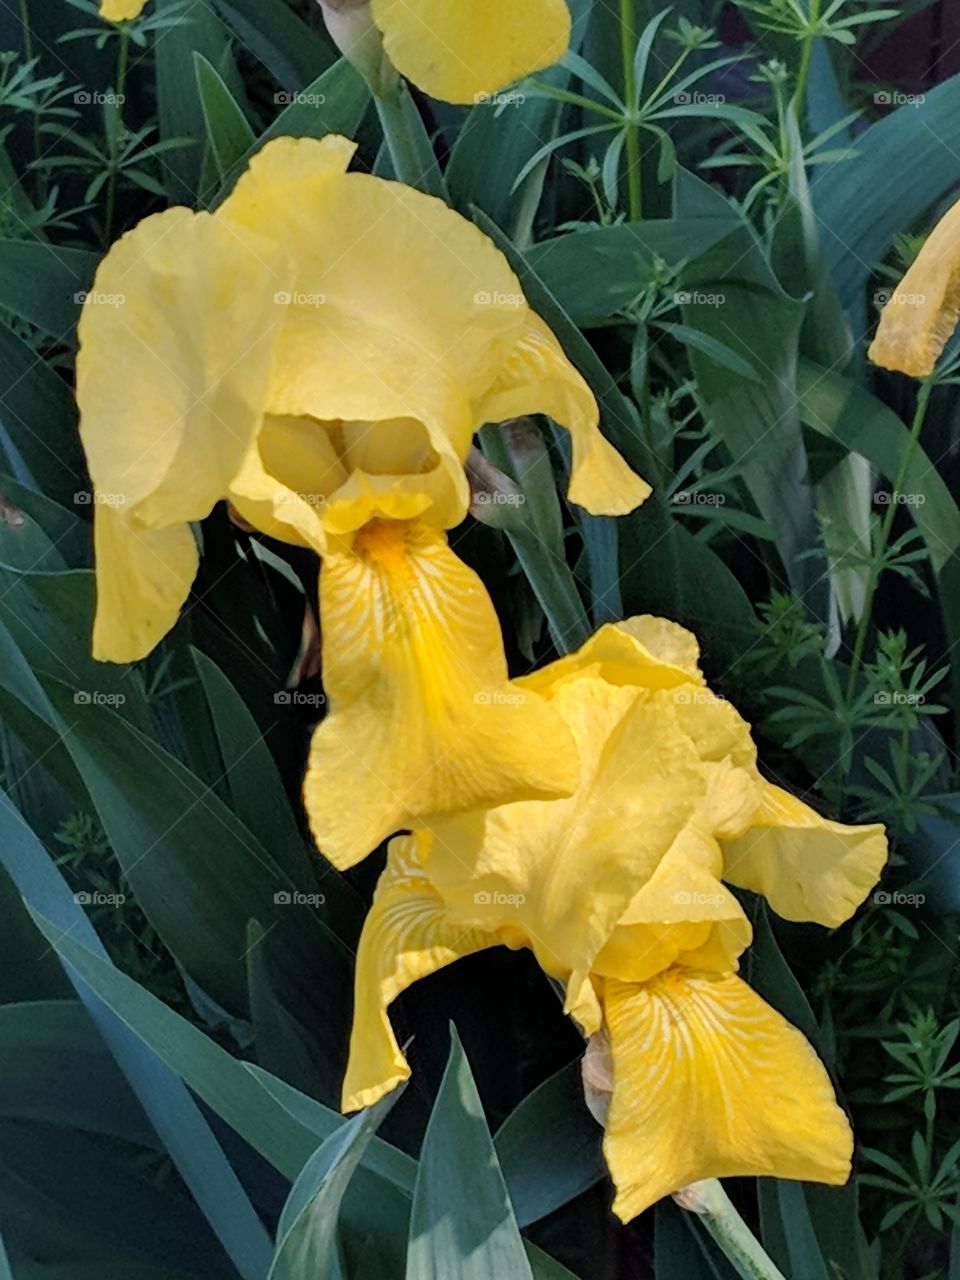 Two yellow daffodil blooms